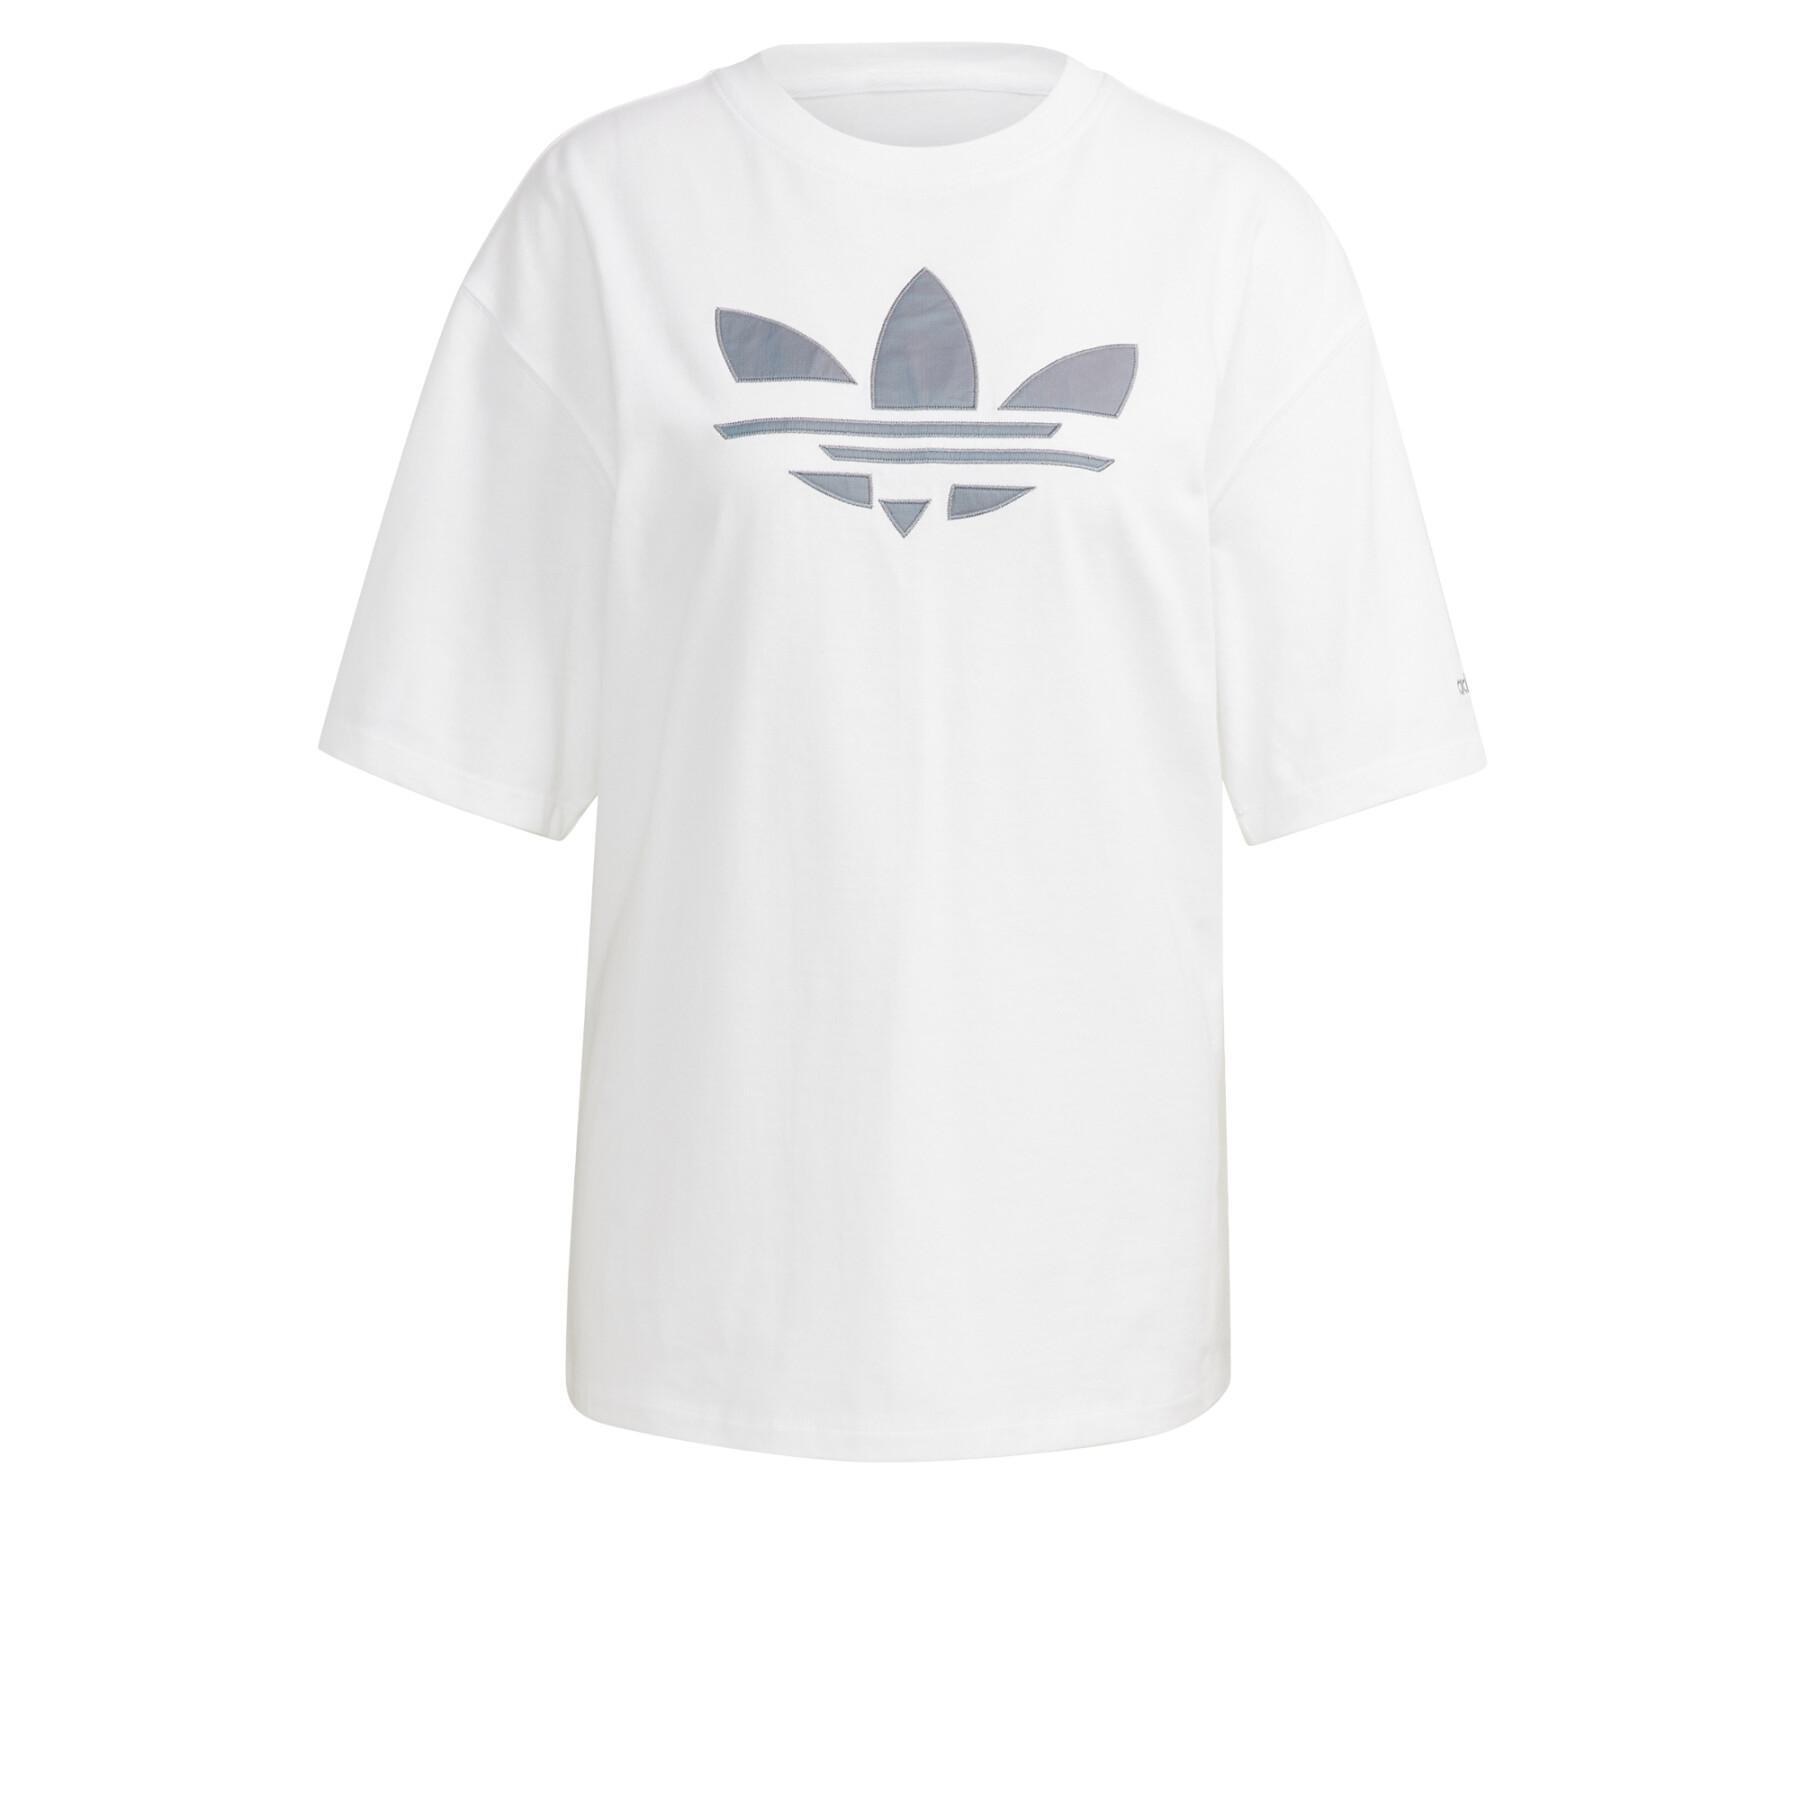 Camiseta adidas Originals Adicolor Iridescent Trefoil